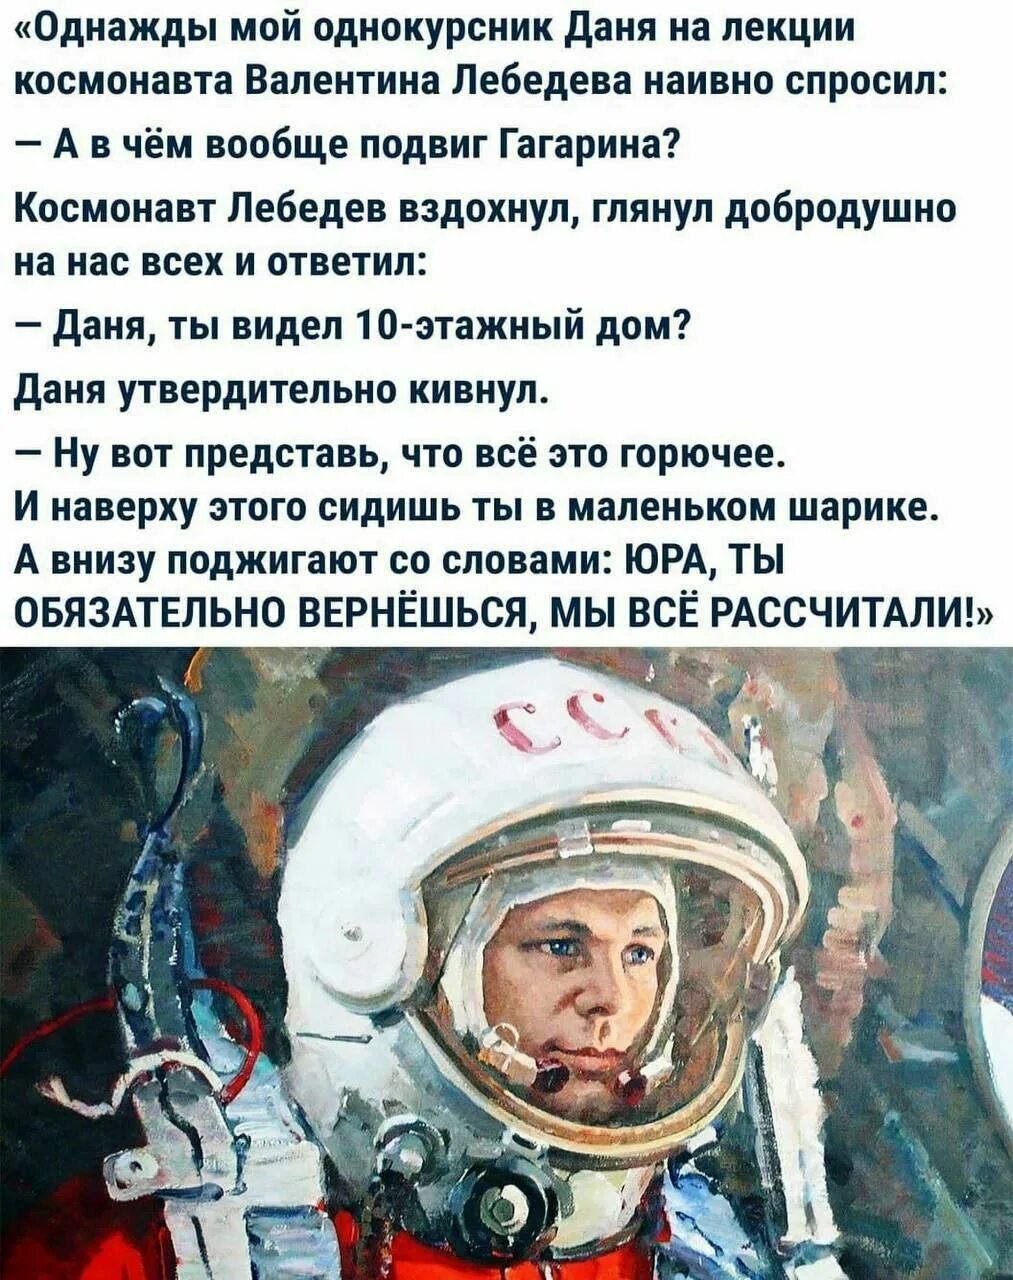 Ответы про гагарина. День космонавтики. В чем подвиг Гагарина. В чем героизм Гагарина.